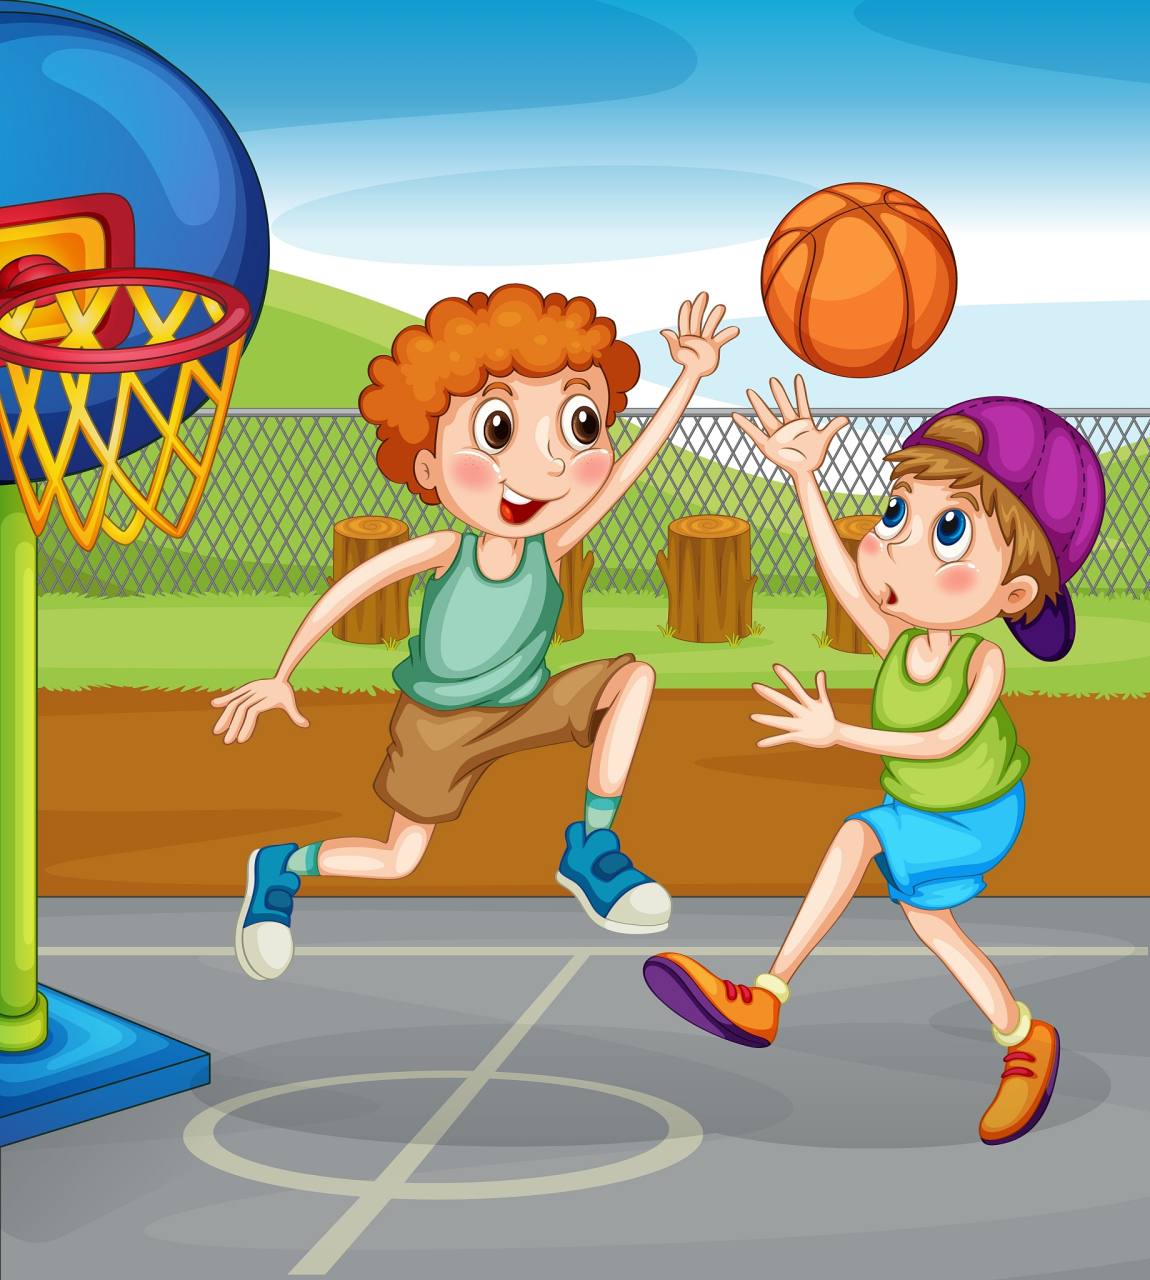 朋友的小孩喜欢打篮球,参加了学校的篮球比赛